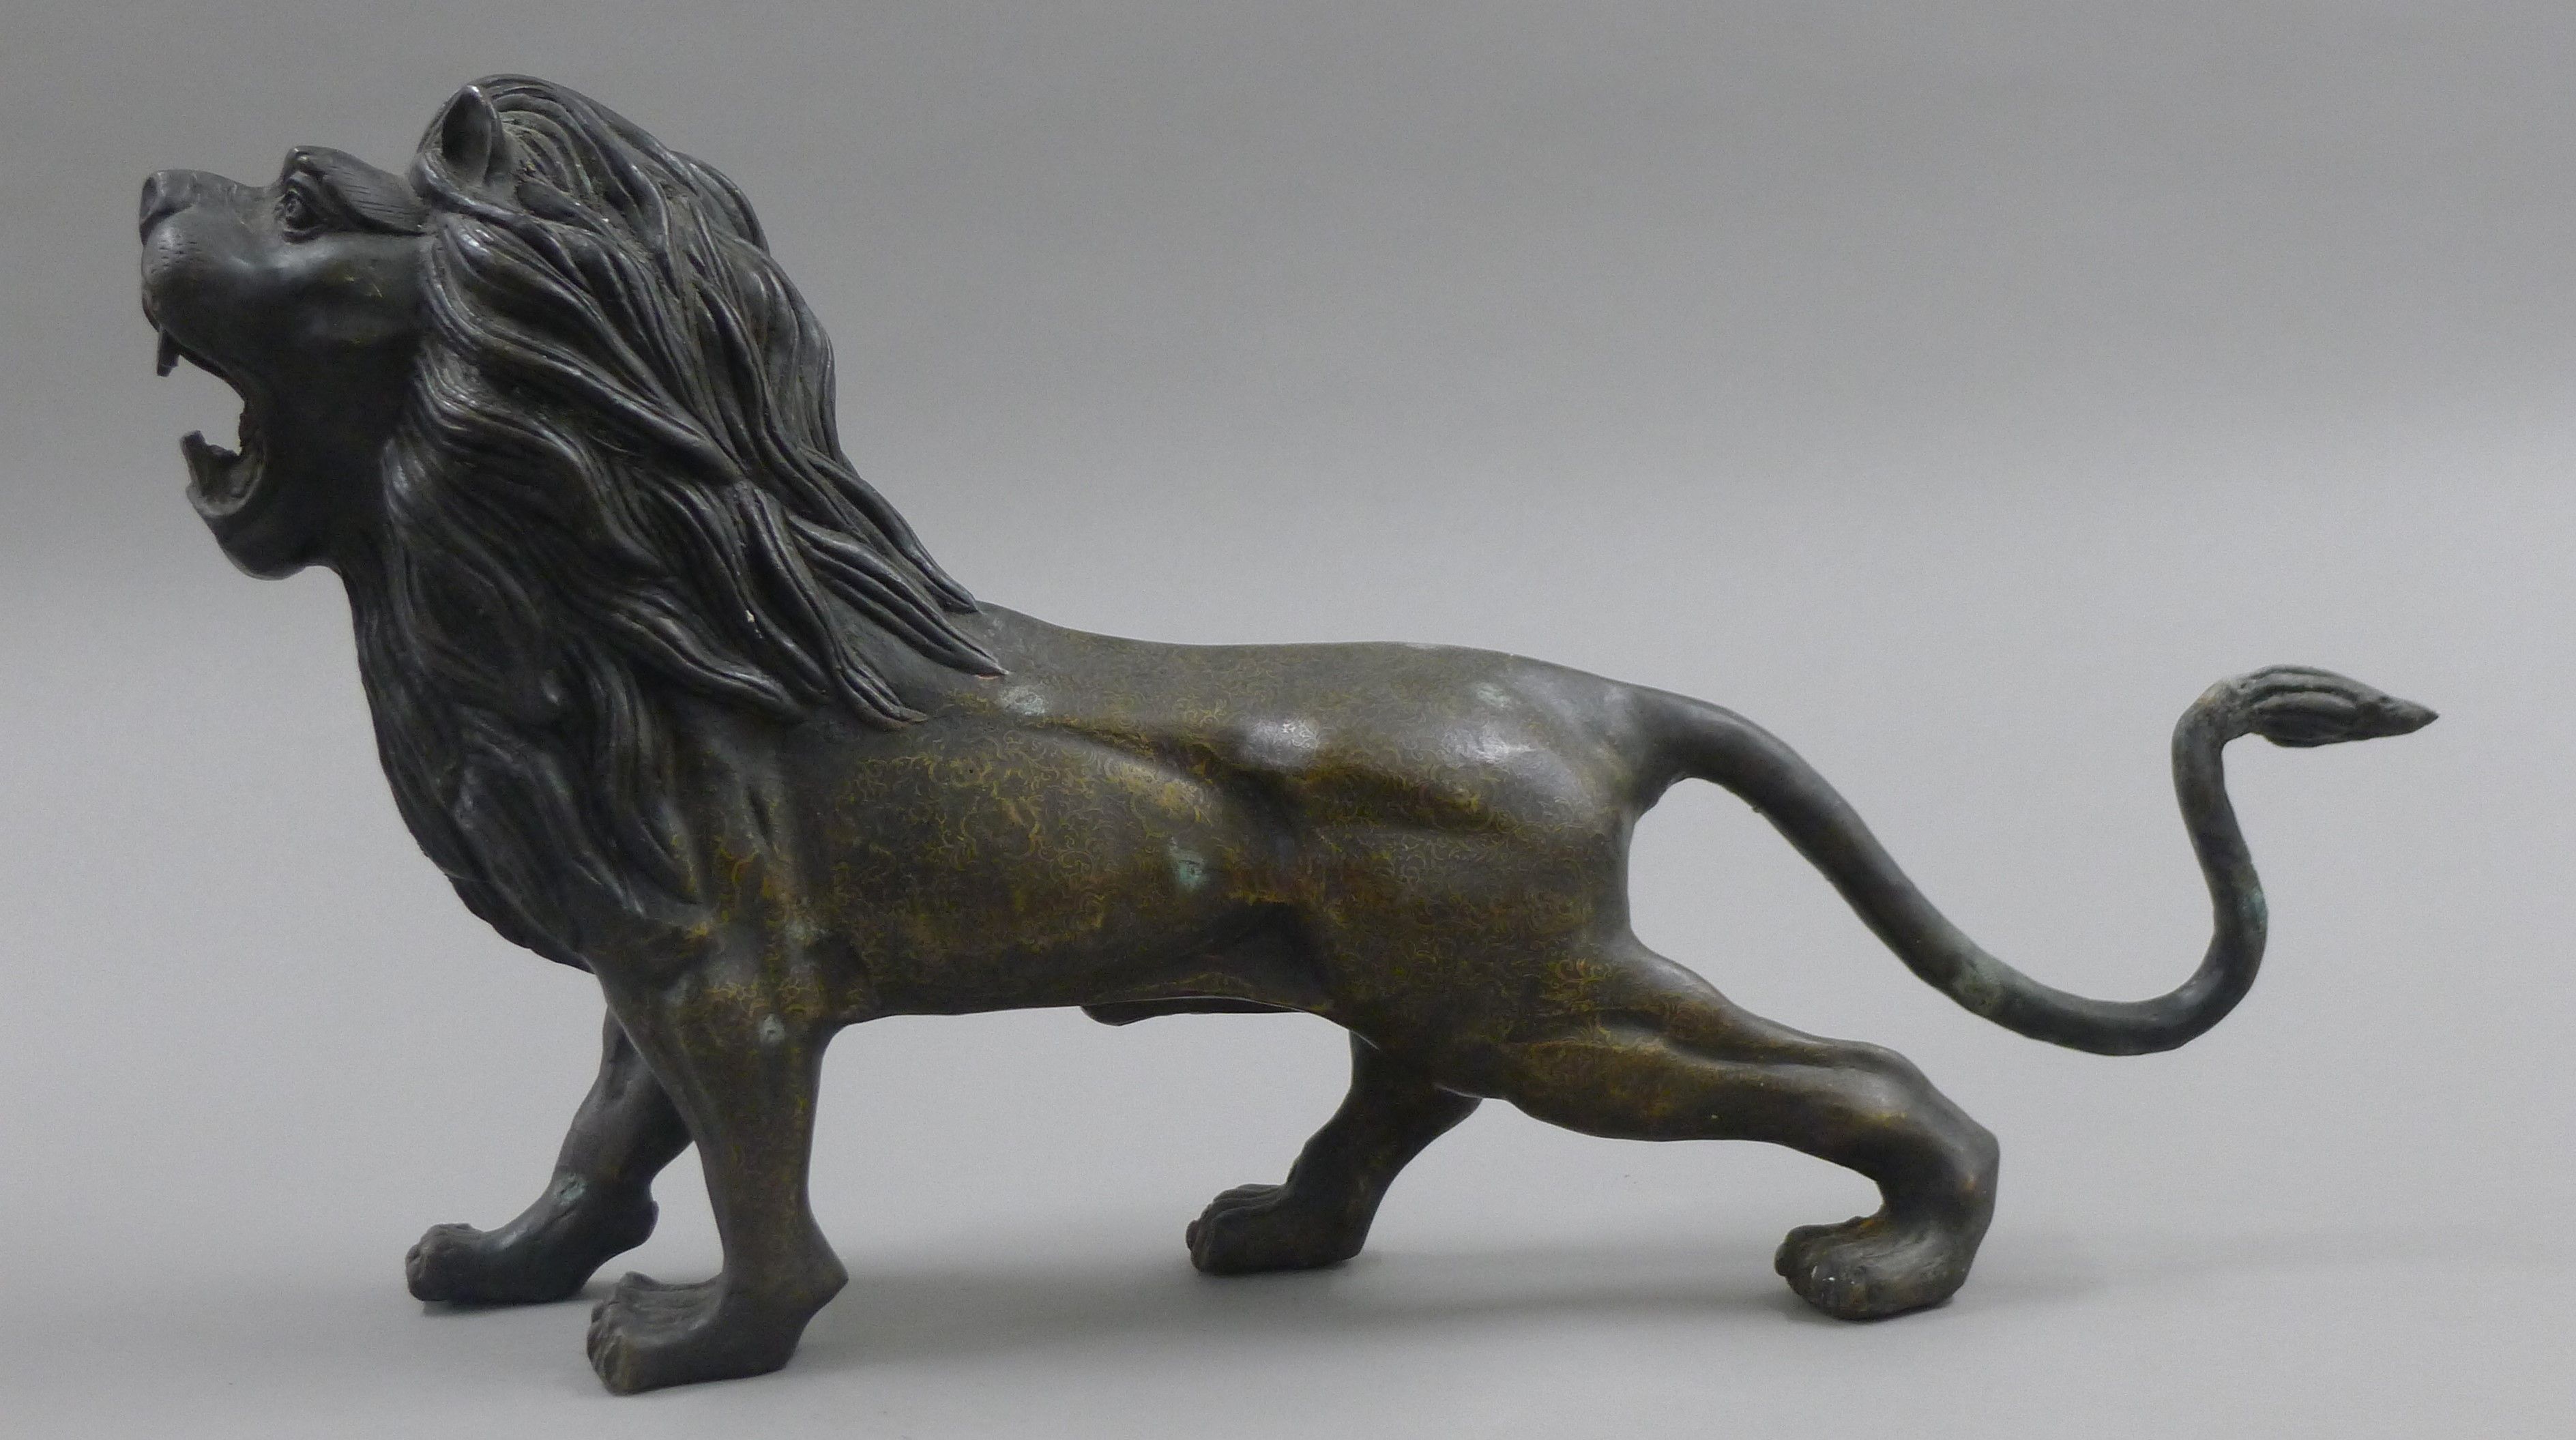 A bronze model of a lion. 56 cm long.